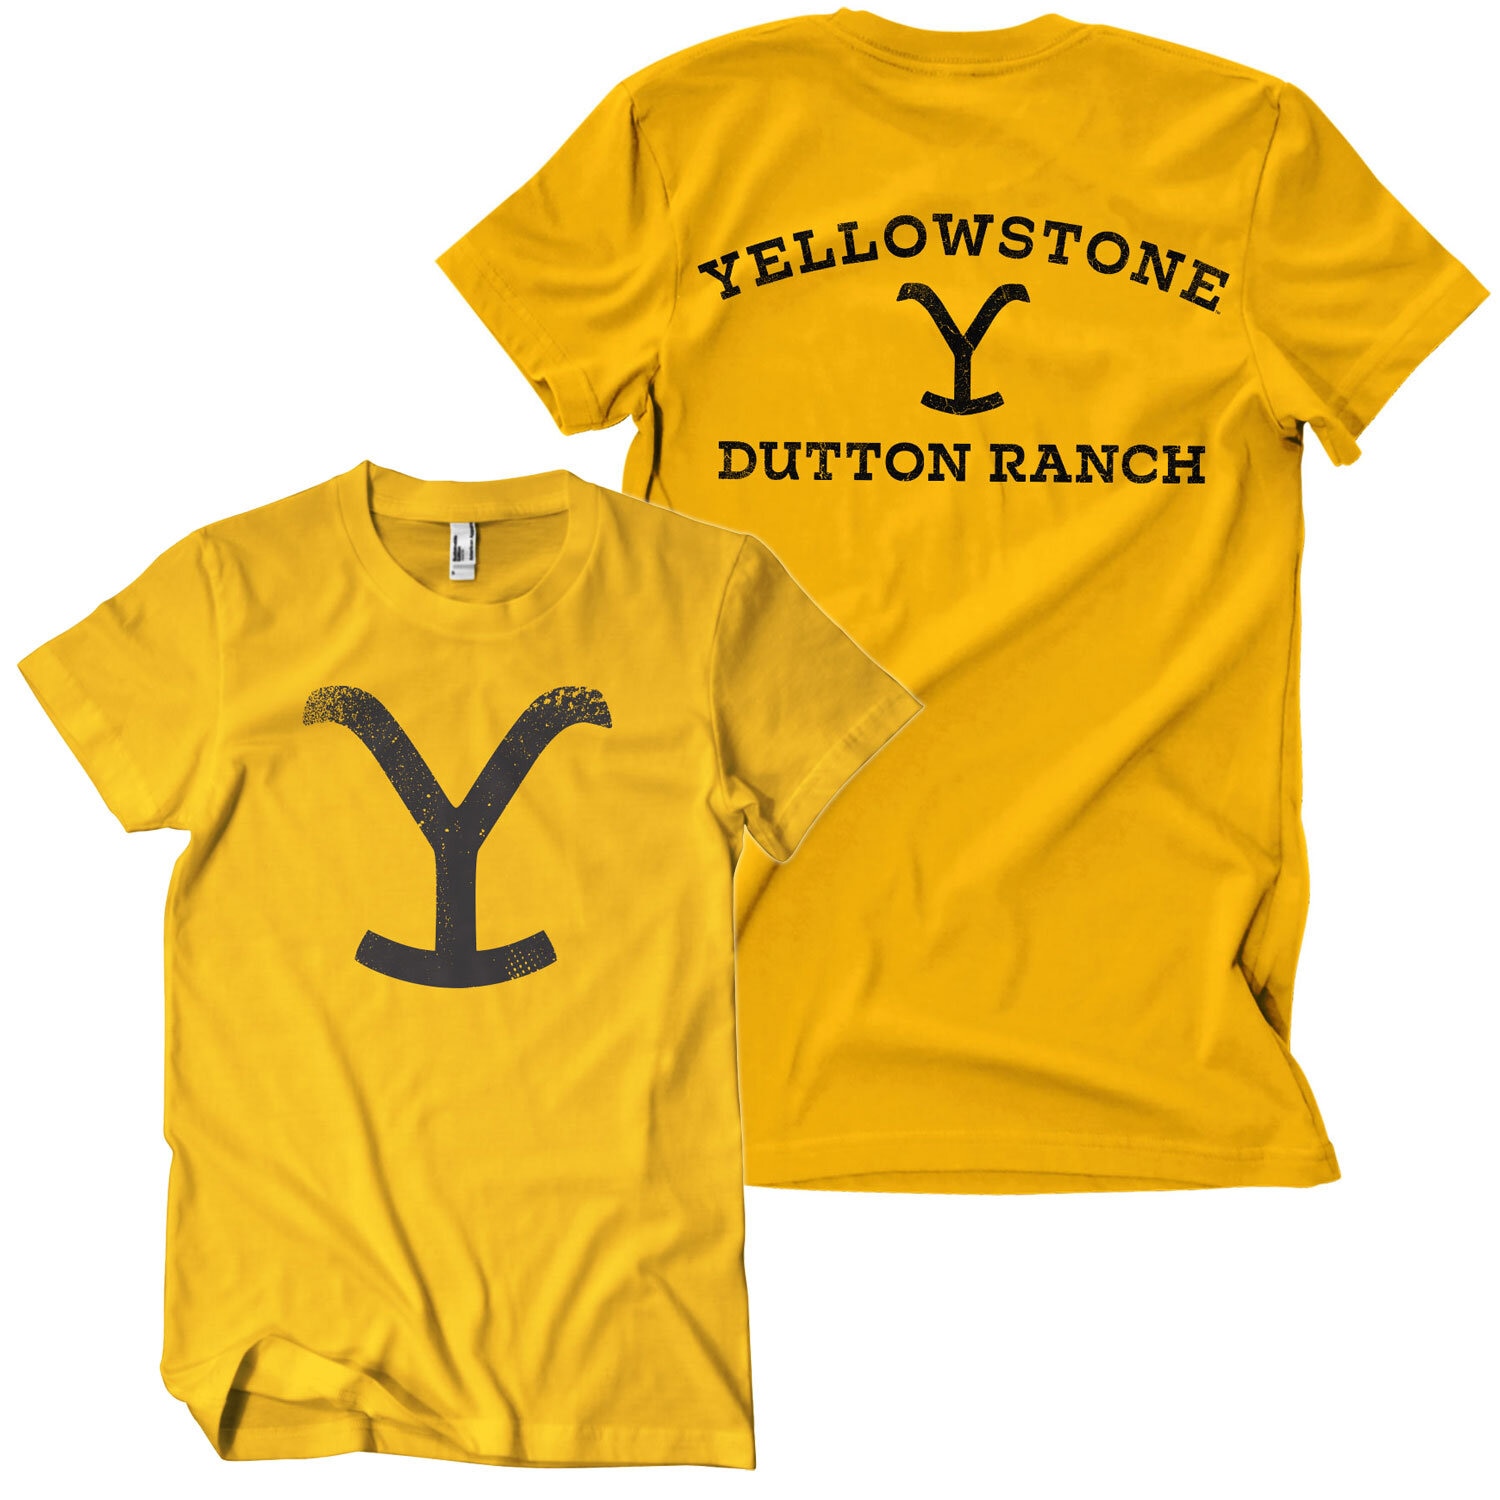 Dutton Ranch Brand T-Shirt